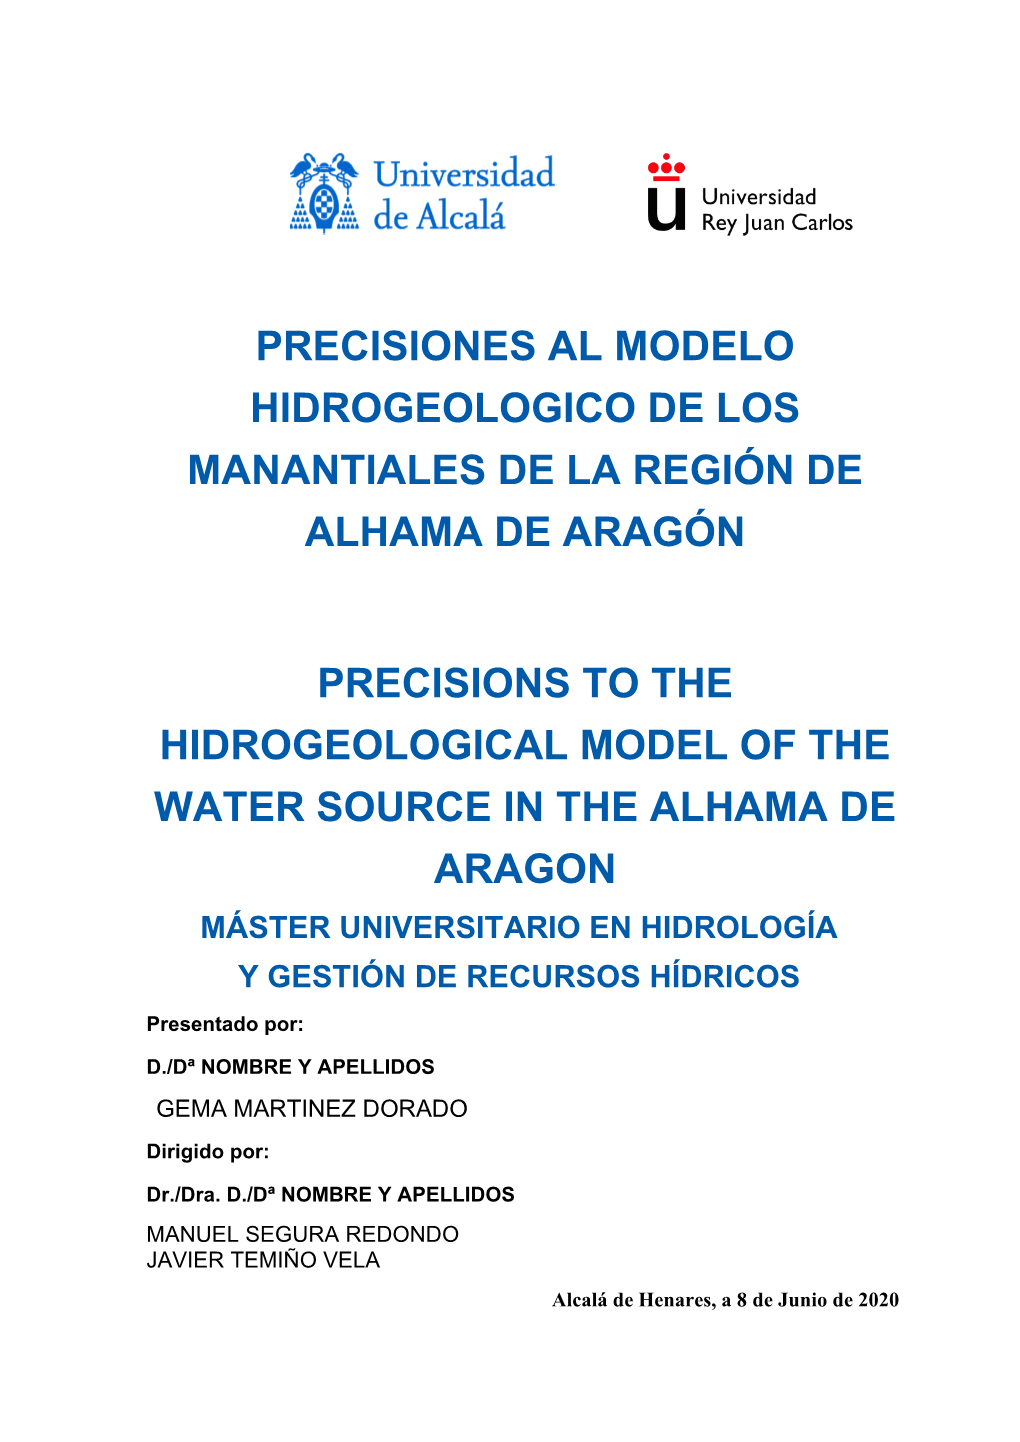 Precisiones Al Modelo Hidrogeologico De Los Manantiales De La Región De Alhama De Aragón